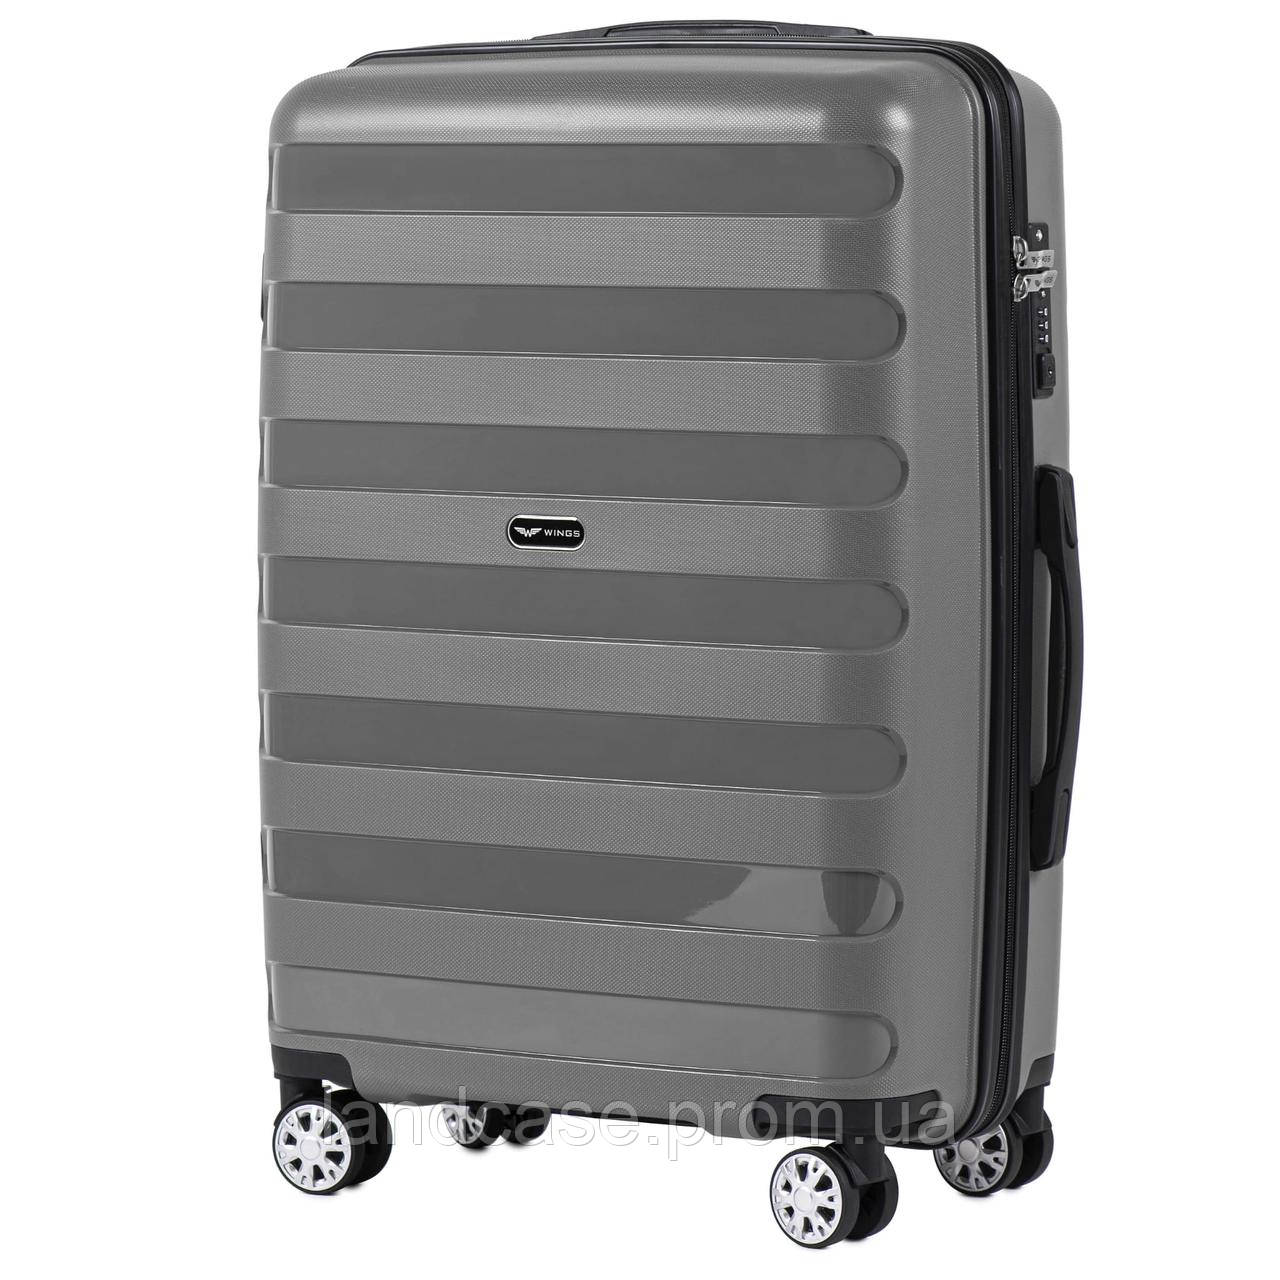 Средний пластиковый чемодан на 4 колесах Wings PP07 M Графитовый